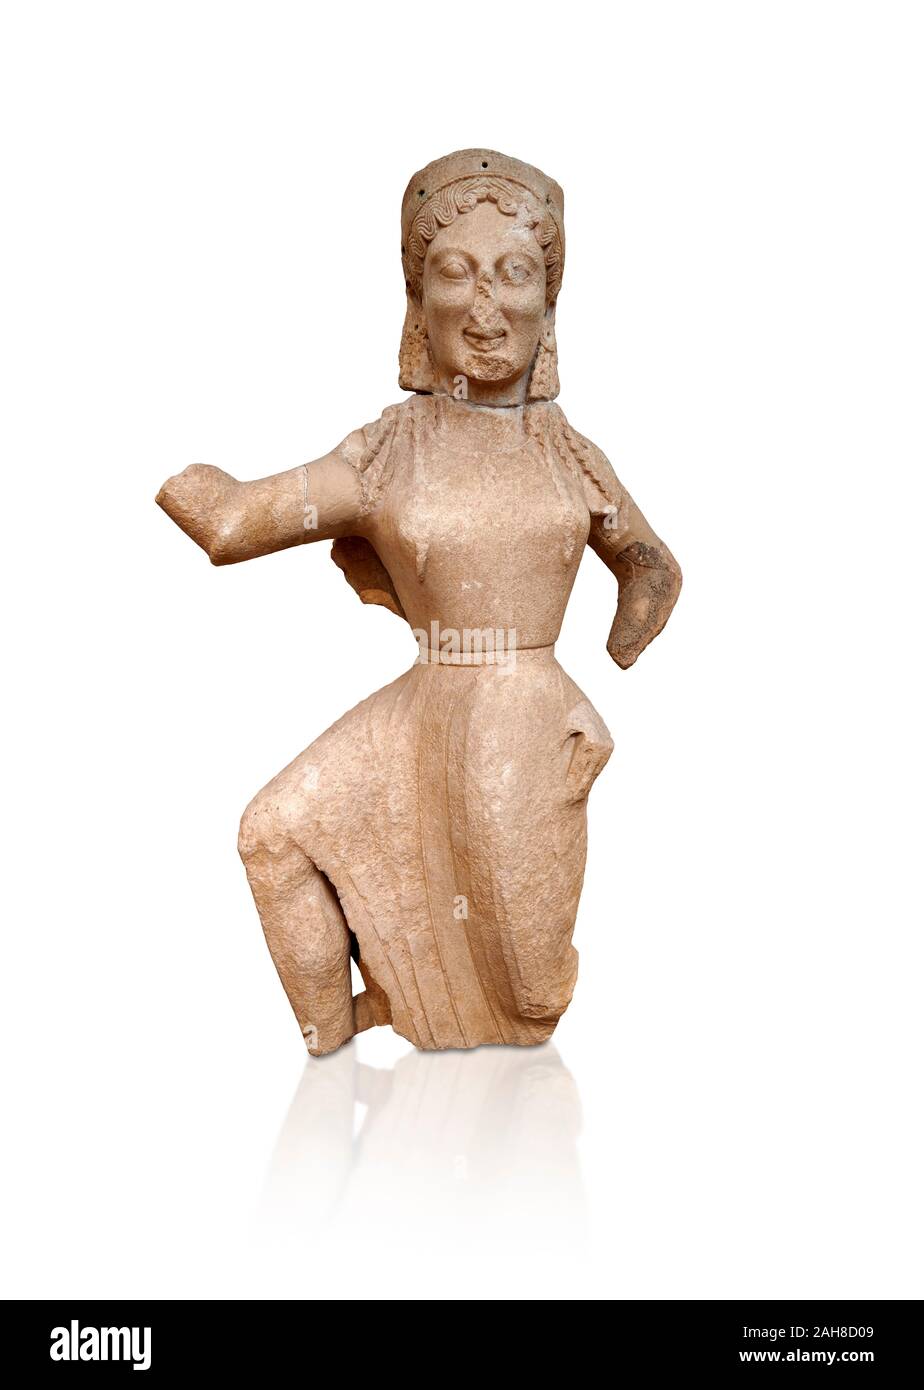 Parianmarble archaïque grecque ancienne statue d'un Nike par Archermos, ion de Chios trouvés Delos, vers 550 avant J.-C., Musée National Archéologique d'Athènes. N Cat Banque D'Images